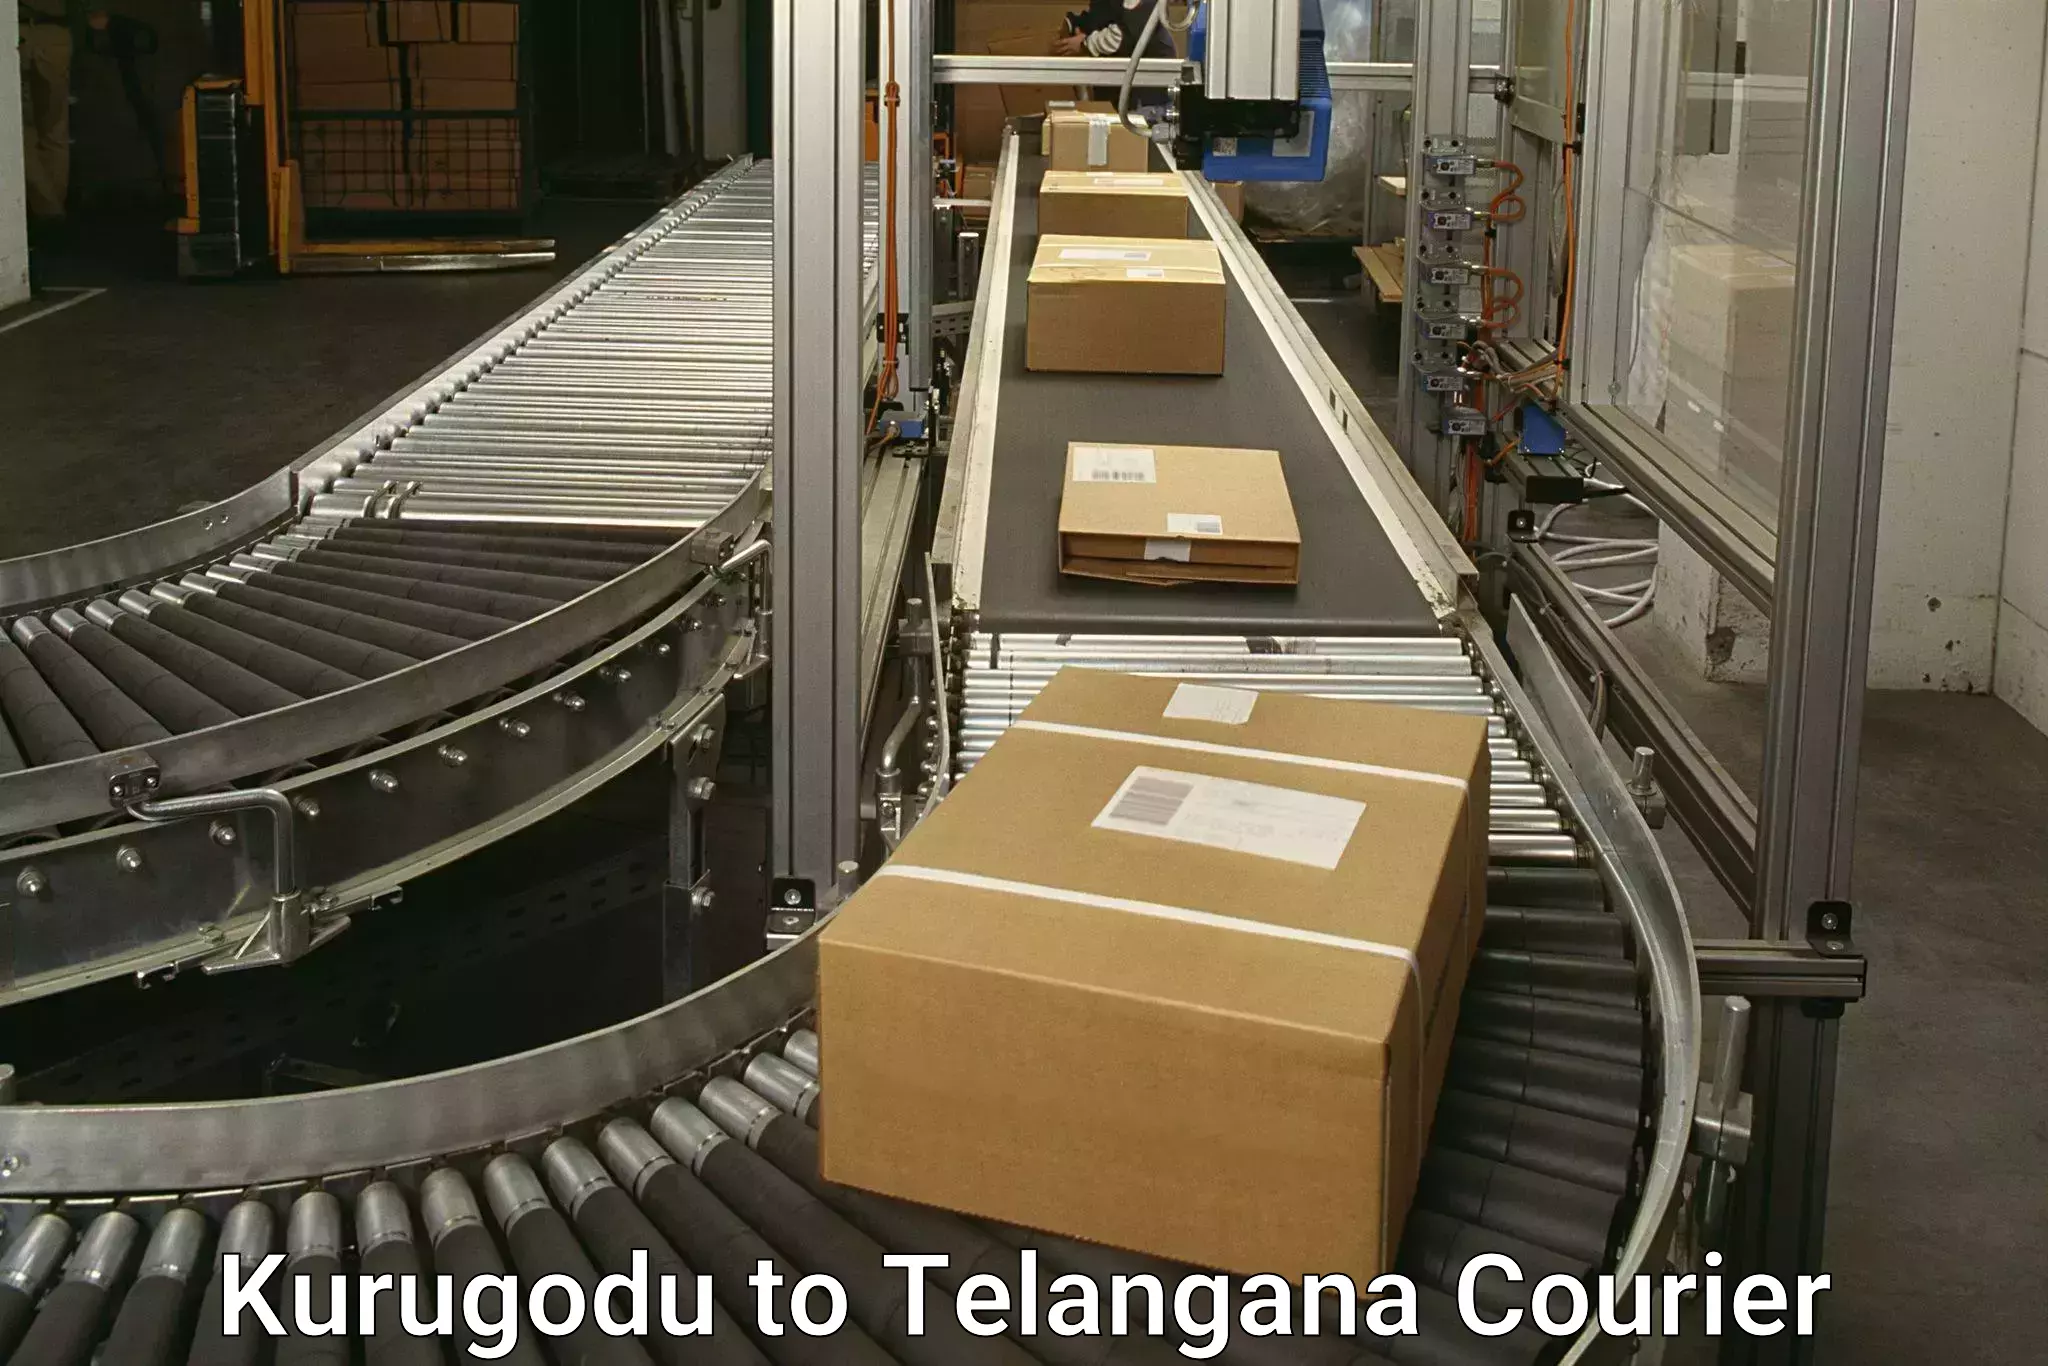 Expedited shipping solutions Kurugodu to Vemulawada